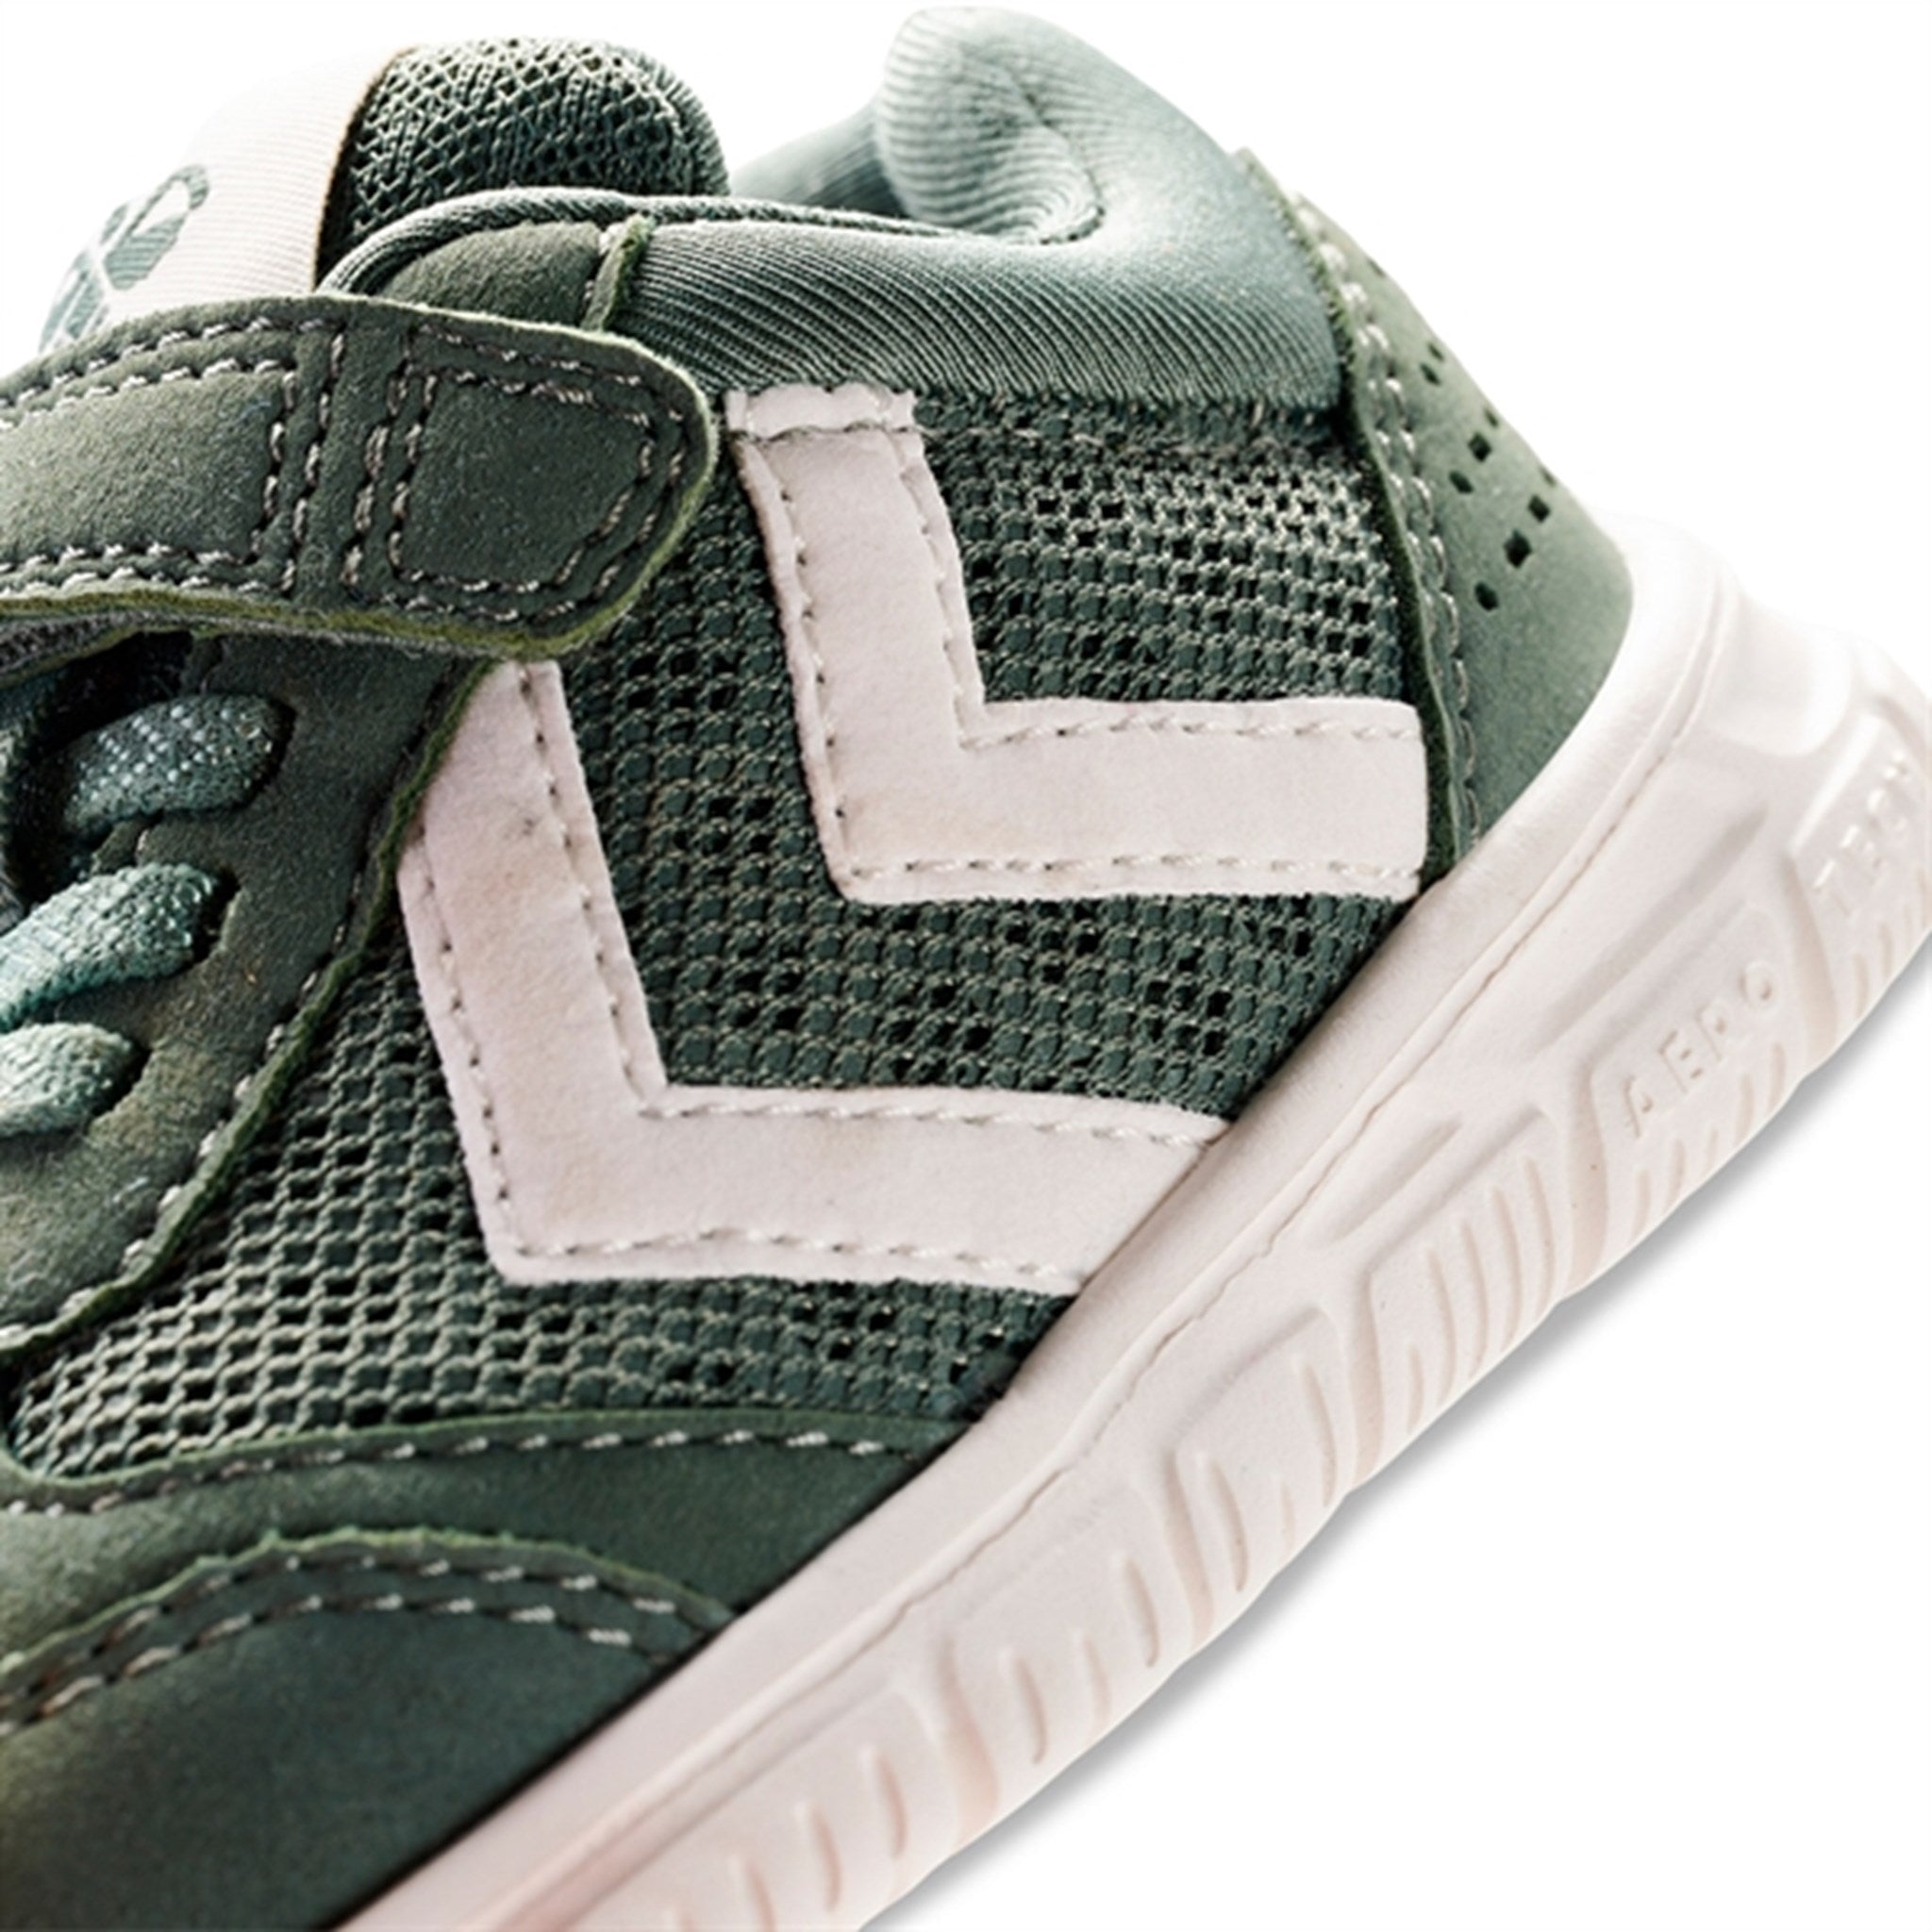 Hummel Crosslite Infant Sneakers Laurel Wreath 6